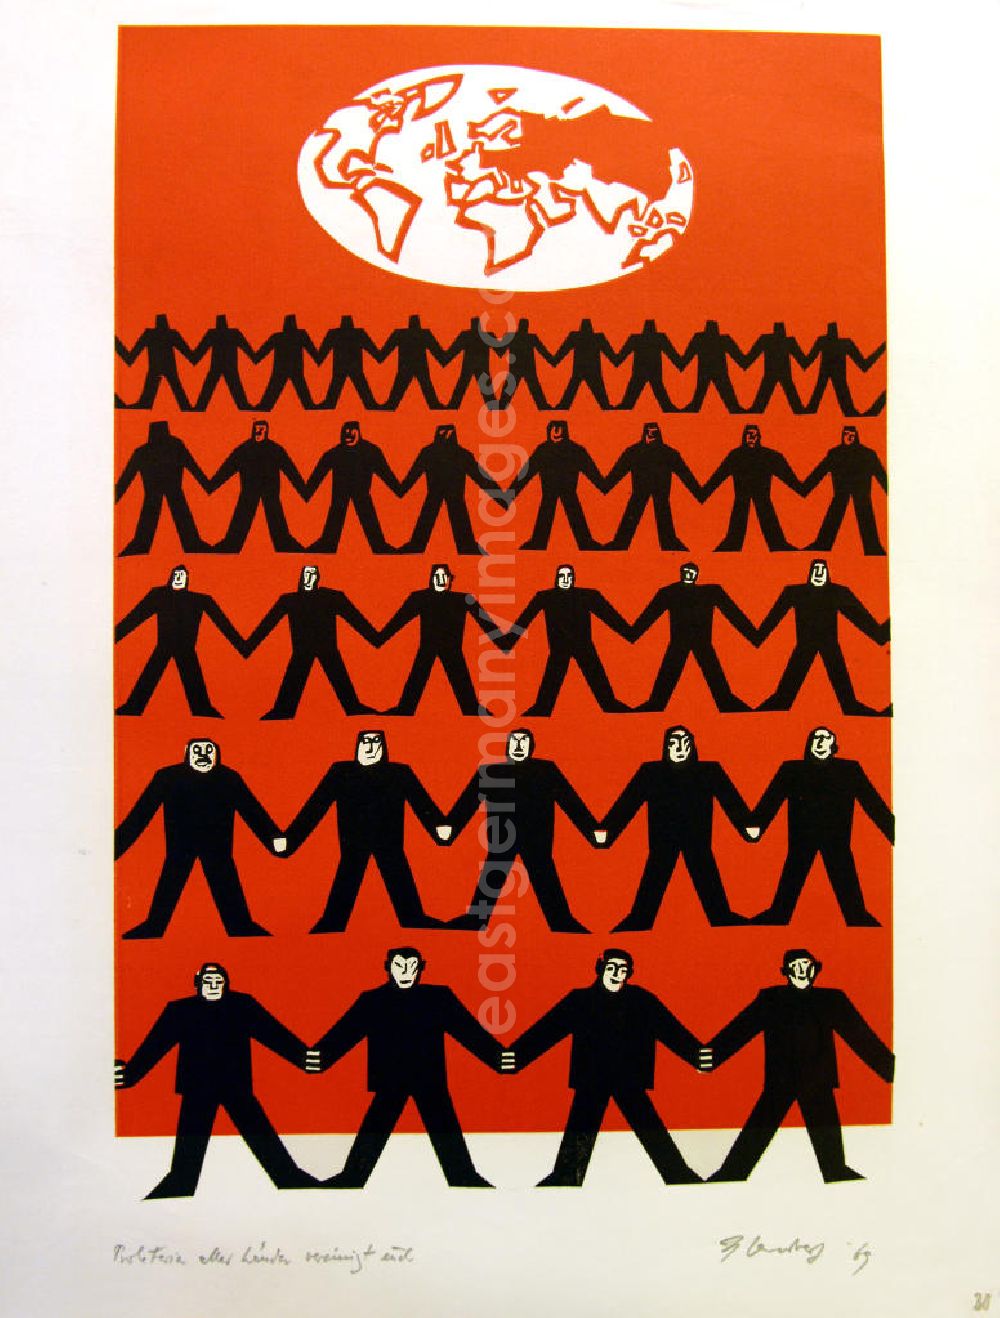 GDR image archive: Berlin - Grafik von Herbert Sandberg Motiv 30 aus dem Zyklus Bilder zum Kommunistischen Manifest aus den Jahren 1967-72 mit 30 Decelithschnitten (in Schwarz-Weiß, zusätzlich etzwas Rot) als Illustration zu Marx' und Engels' Manifest der Kommunistischen Partei aus dem Jahr 1847, Grafik zur Textstelle Proletarier aller Länder, vereinigt euch! aus dem Jahr 1969, 28,5x42,